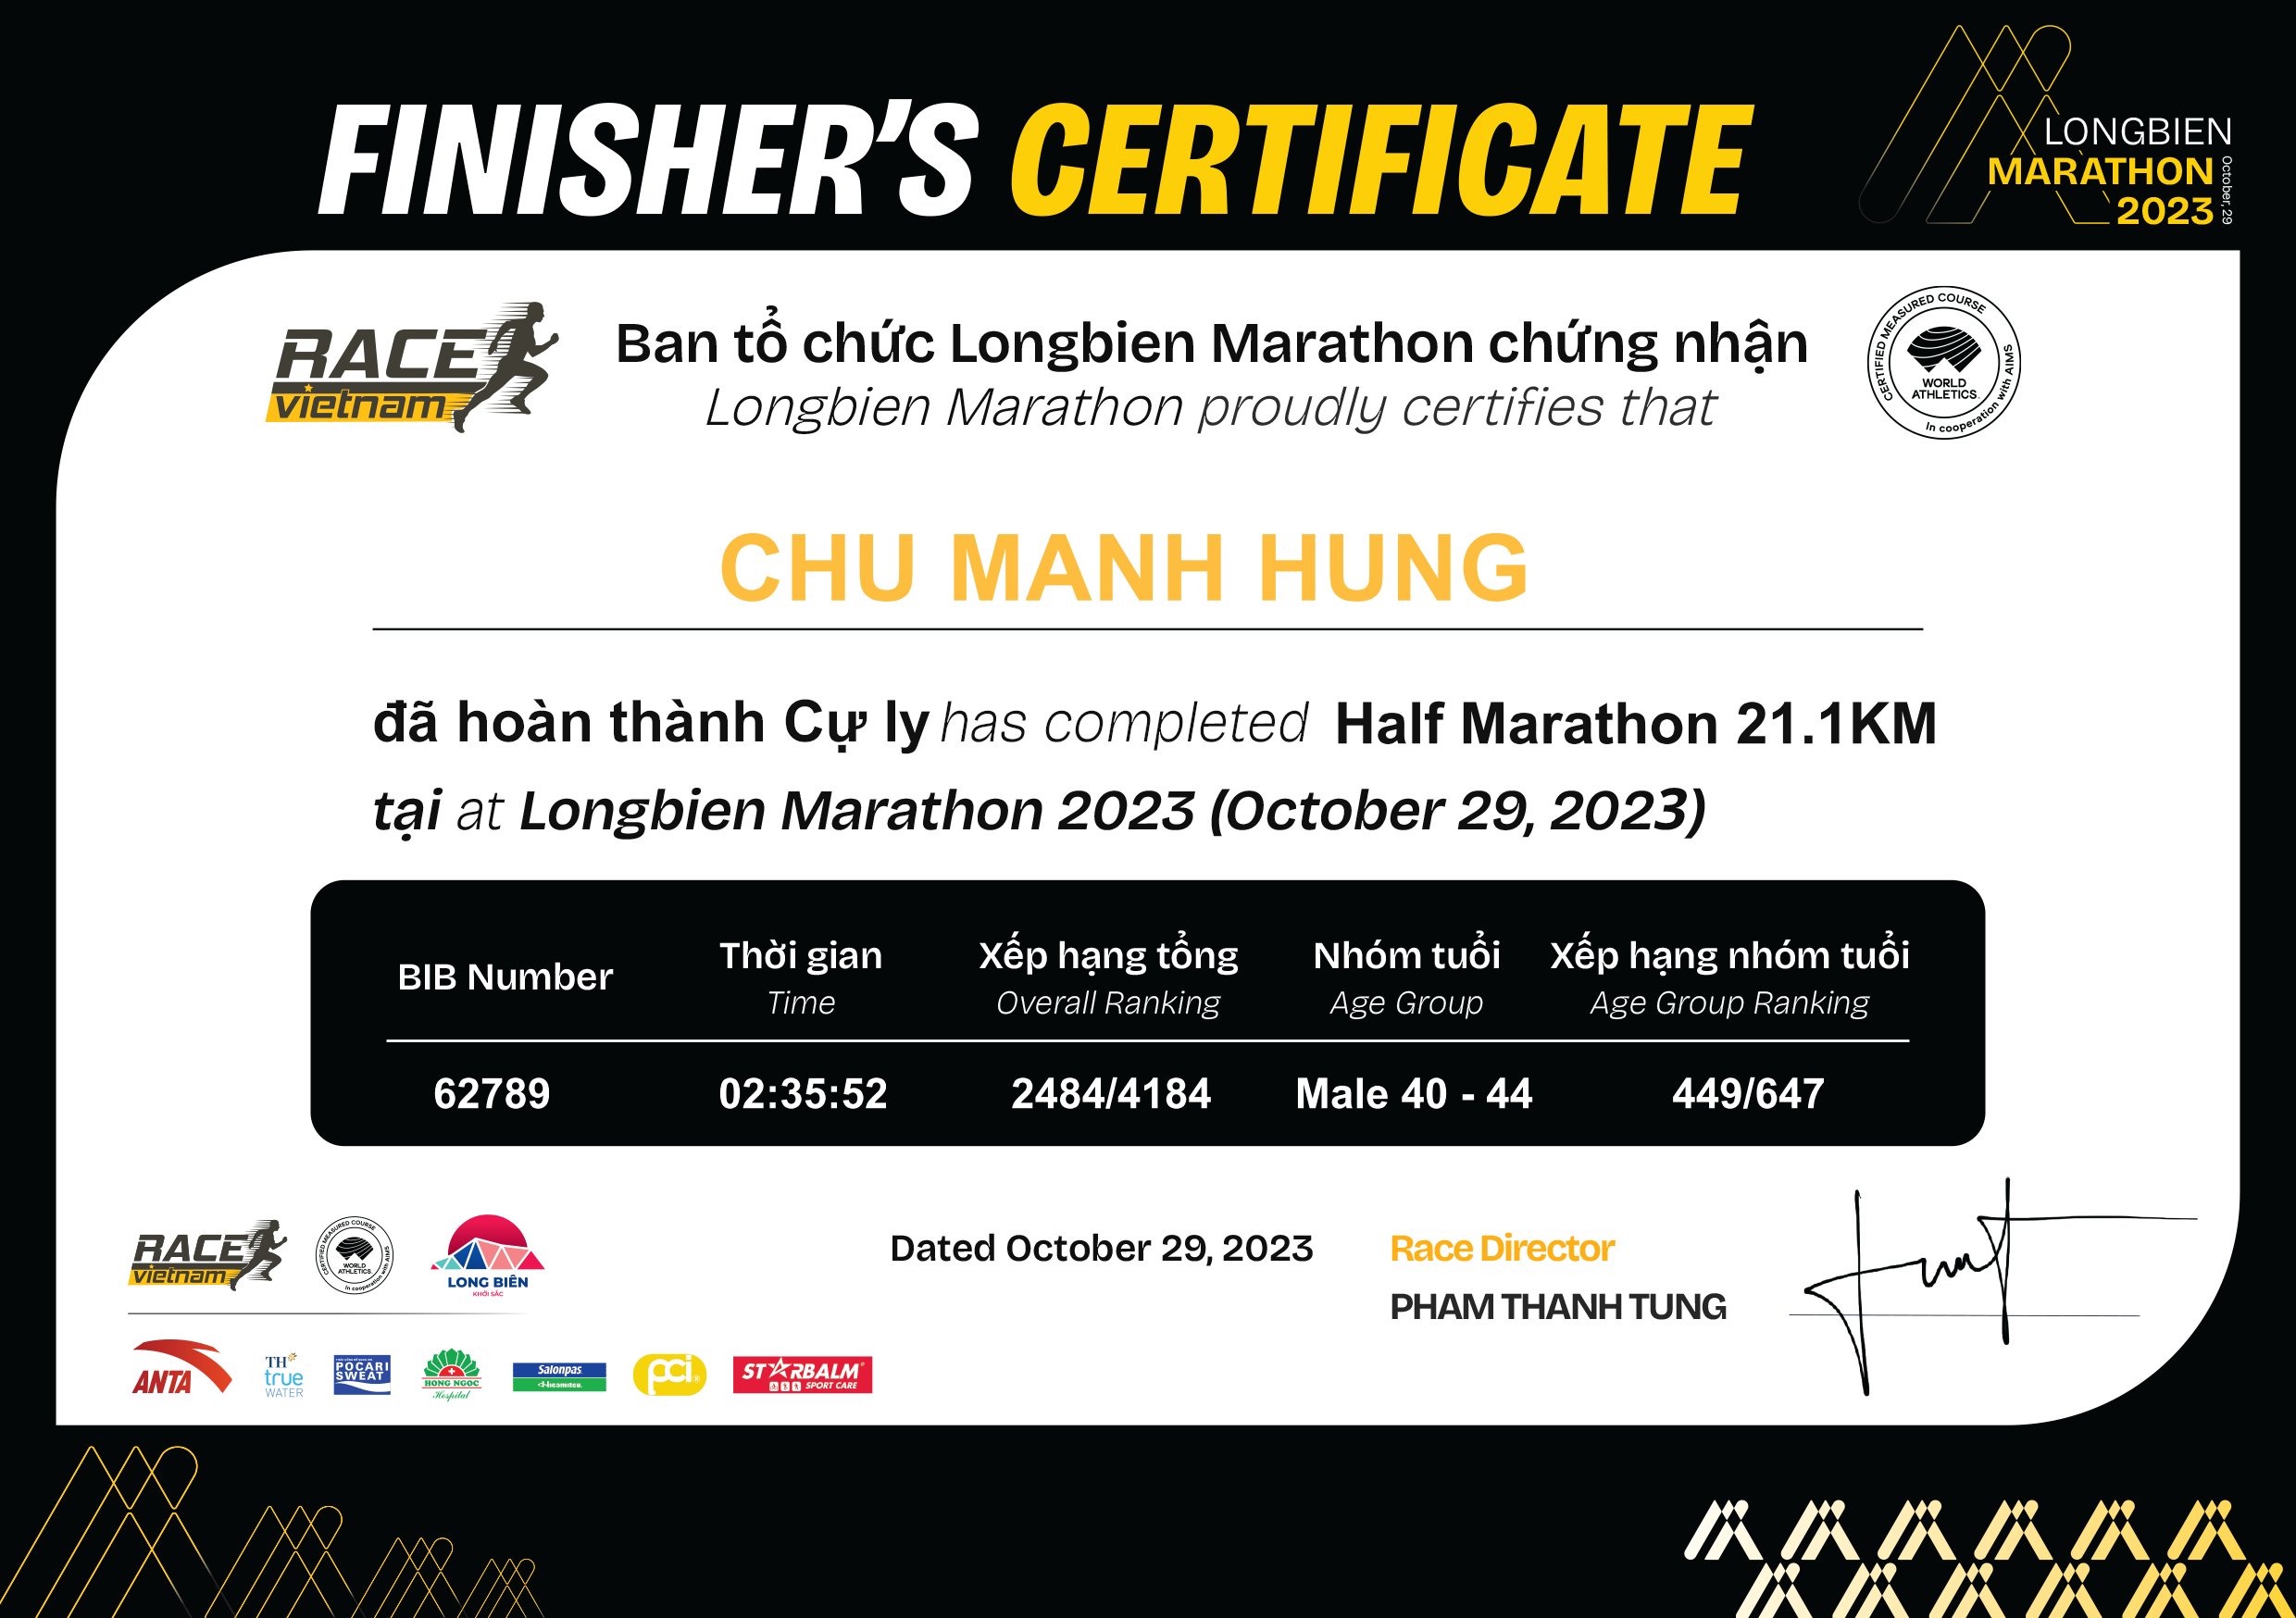 62789 - Chu Manh Hung